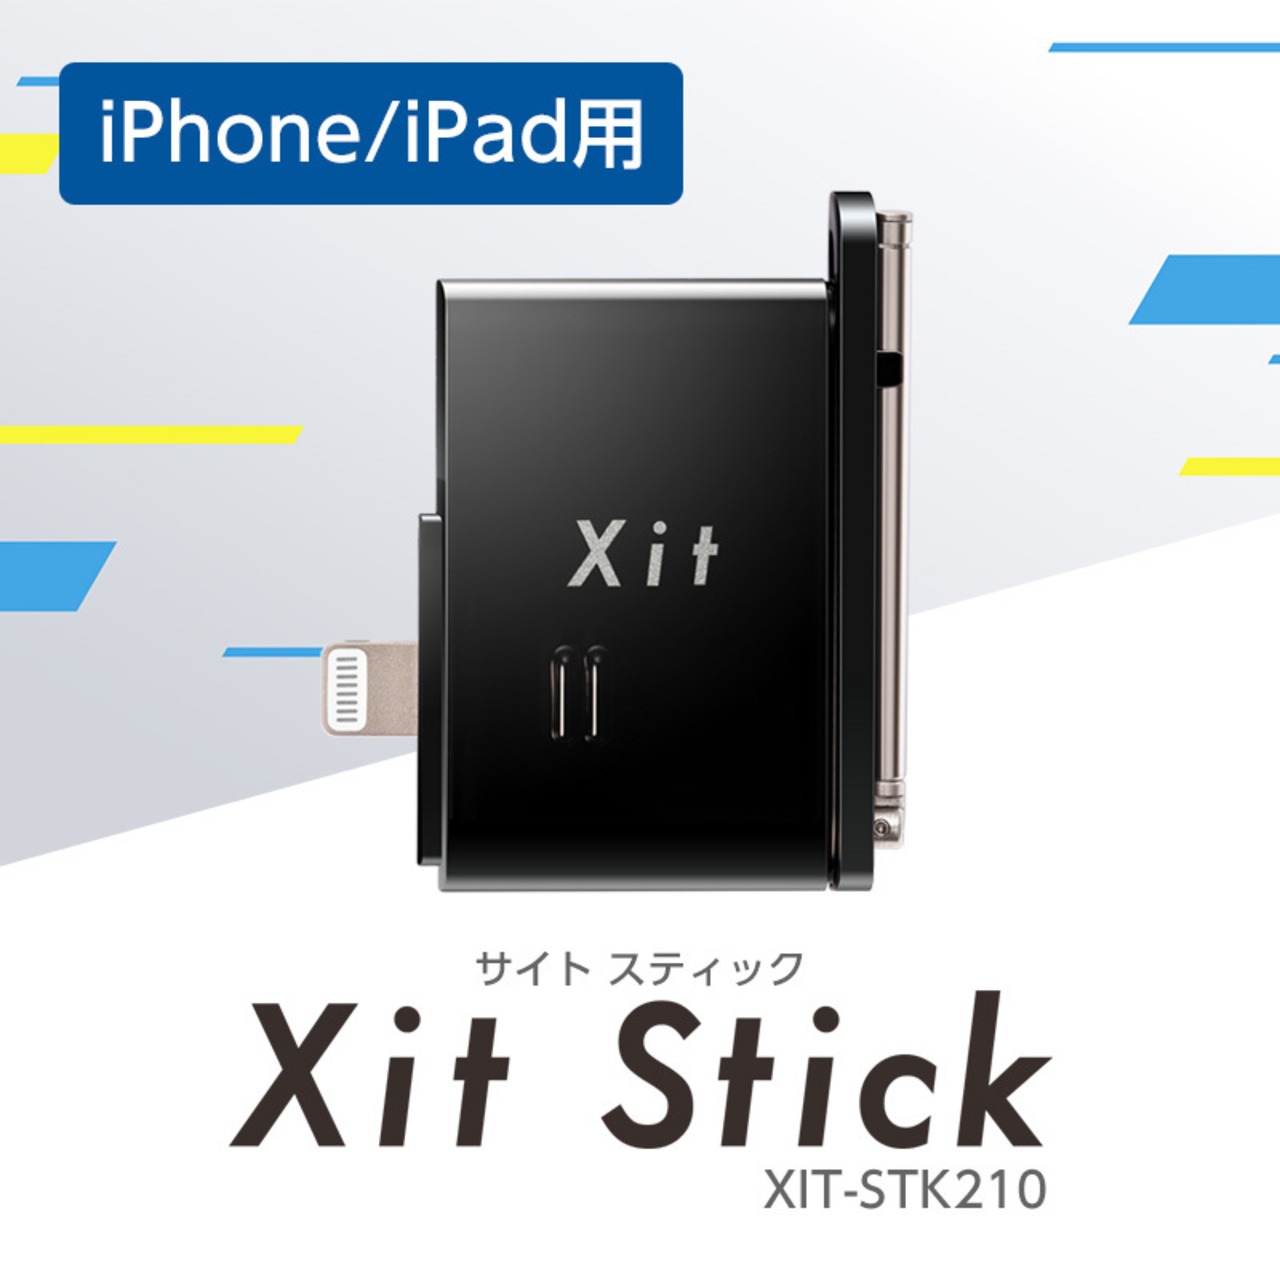 ピクセラ(PIXELA) Xit Stick (サイト・スティック) XIT-STK210 ブラック iPhone/iPad対応